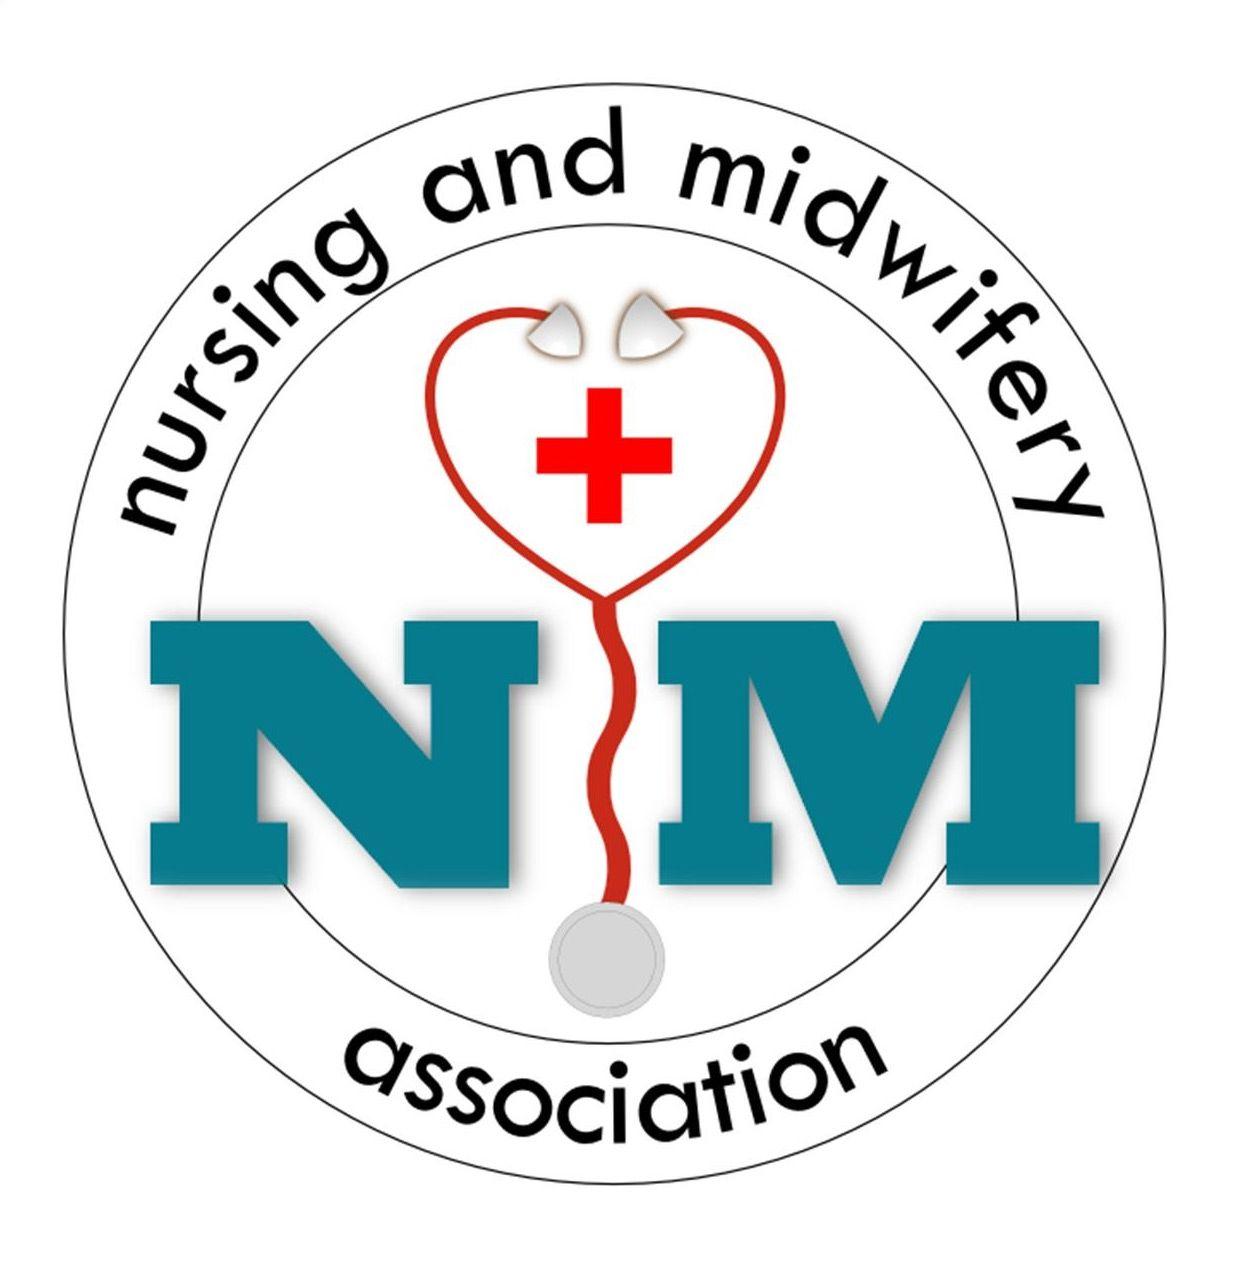 Nurse-Midwife Logo - Free Nurse Midwife Cliparts, Download Free Clip Art, Free Clip Art ...